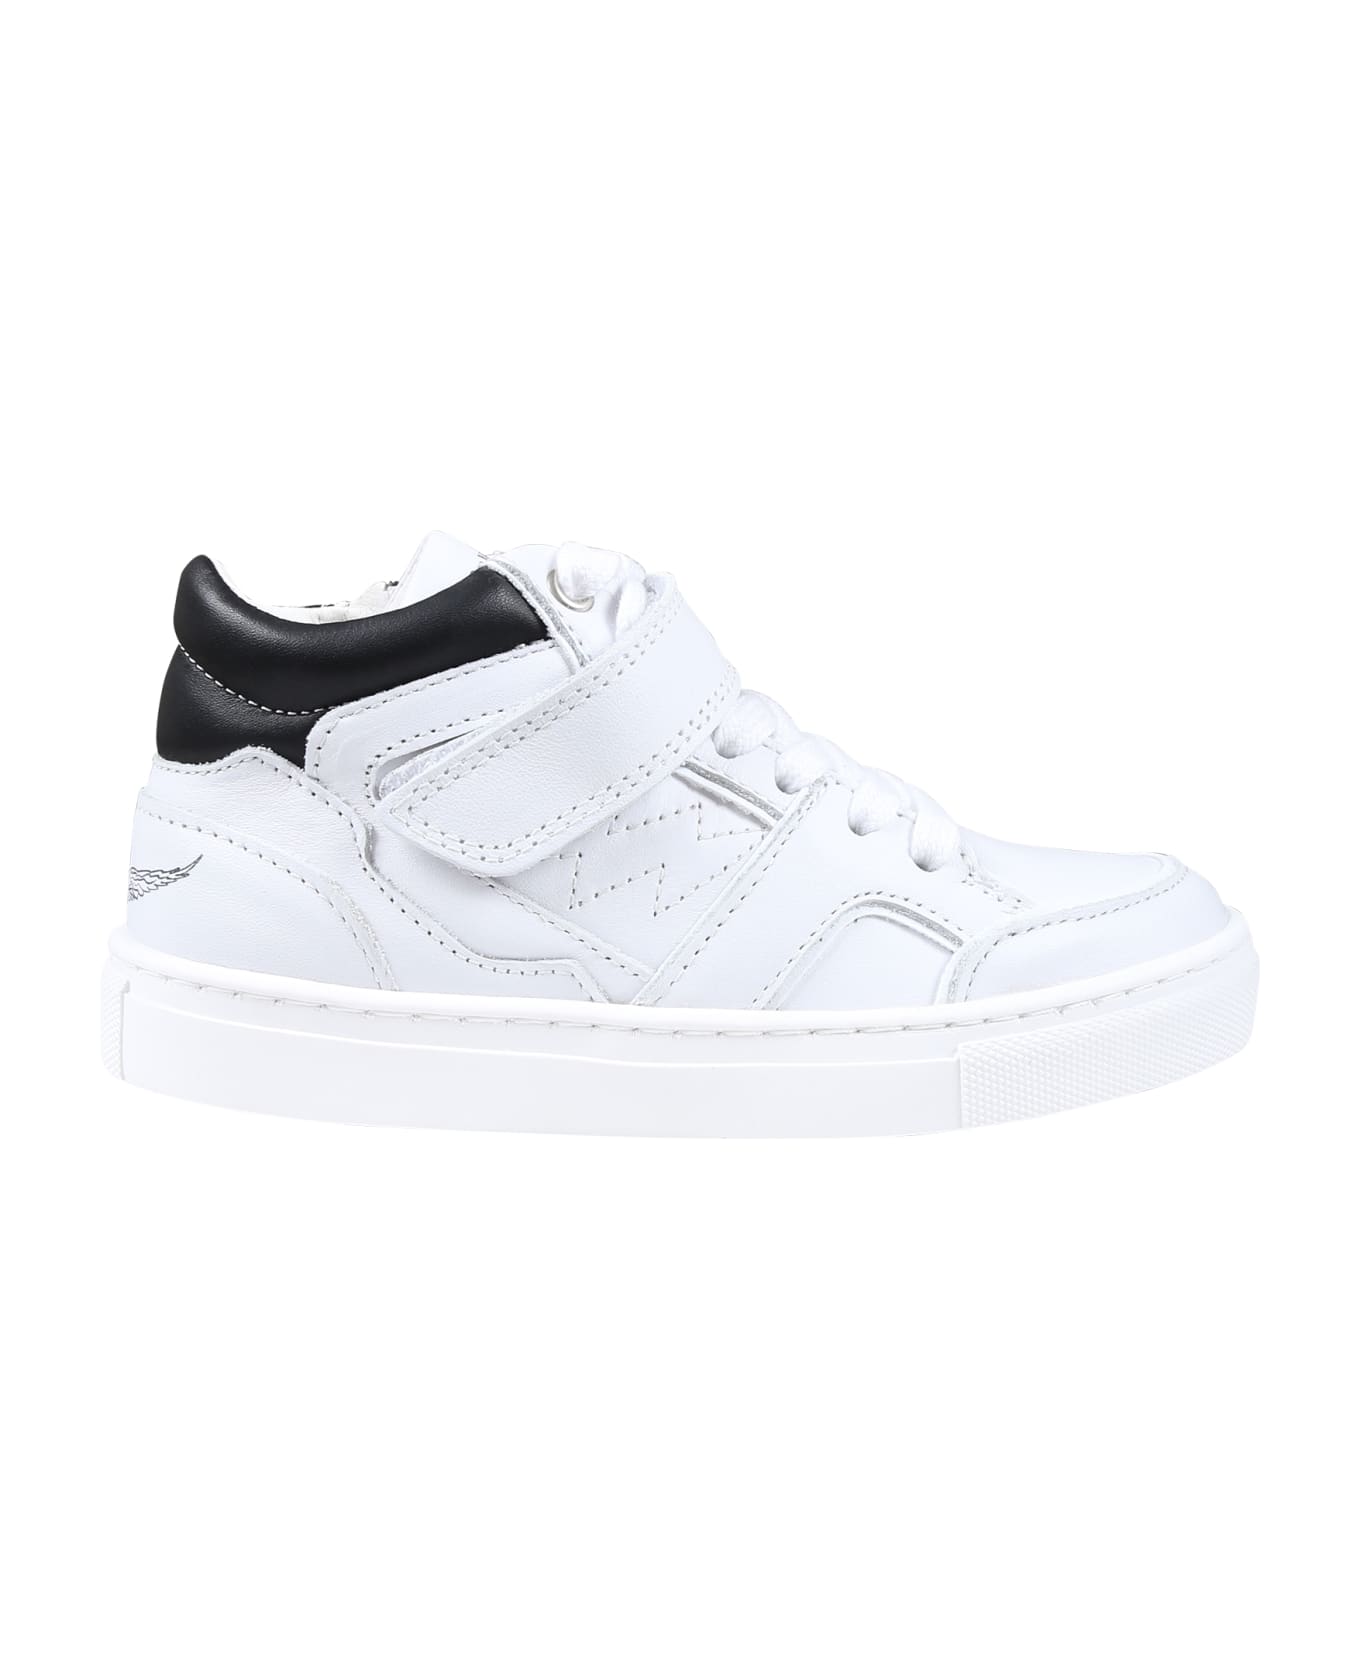 Zadig & Voltaire Sneakers Bianche Per Bambini Con Logo - White